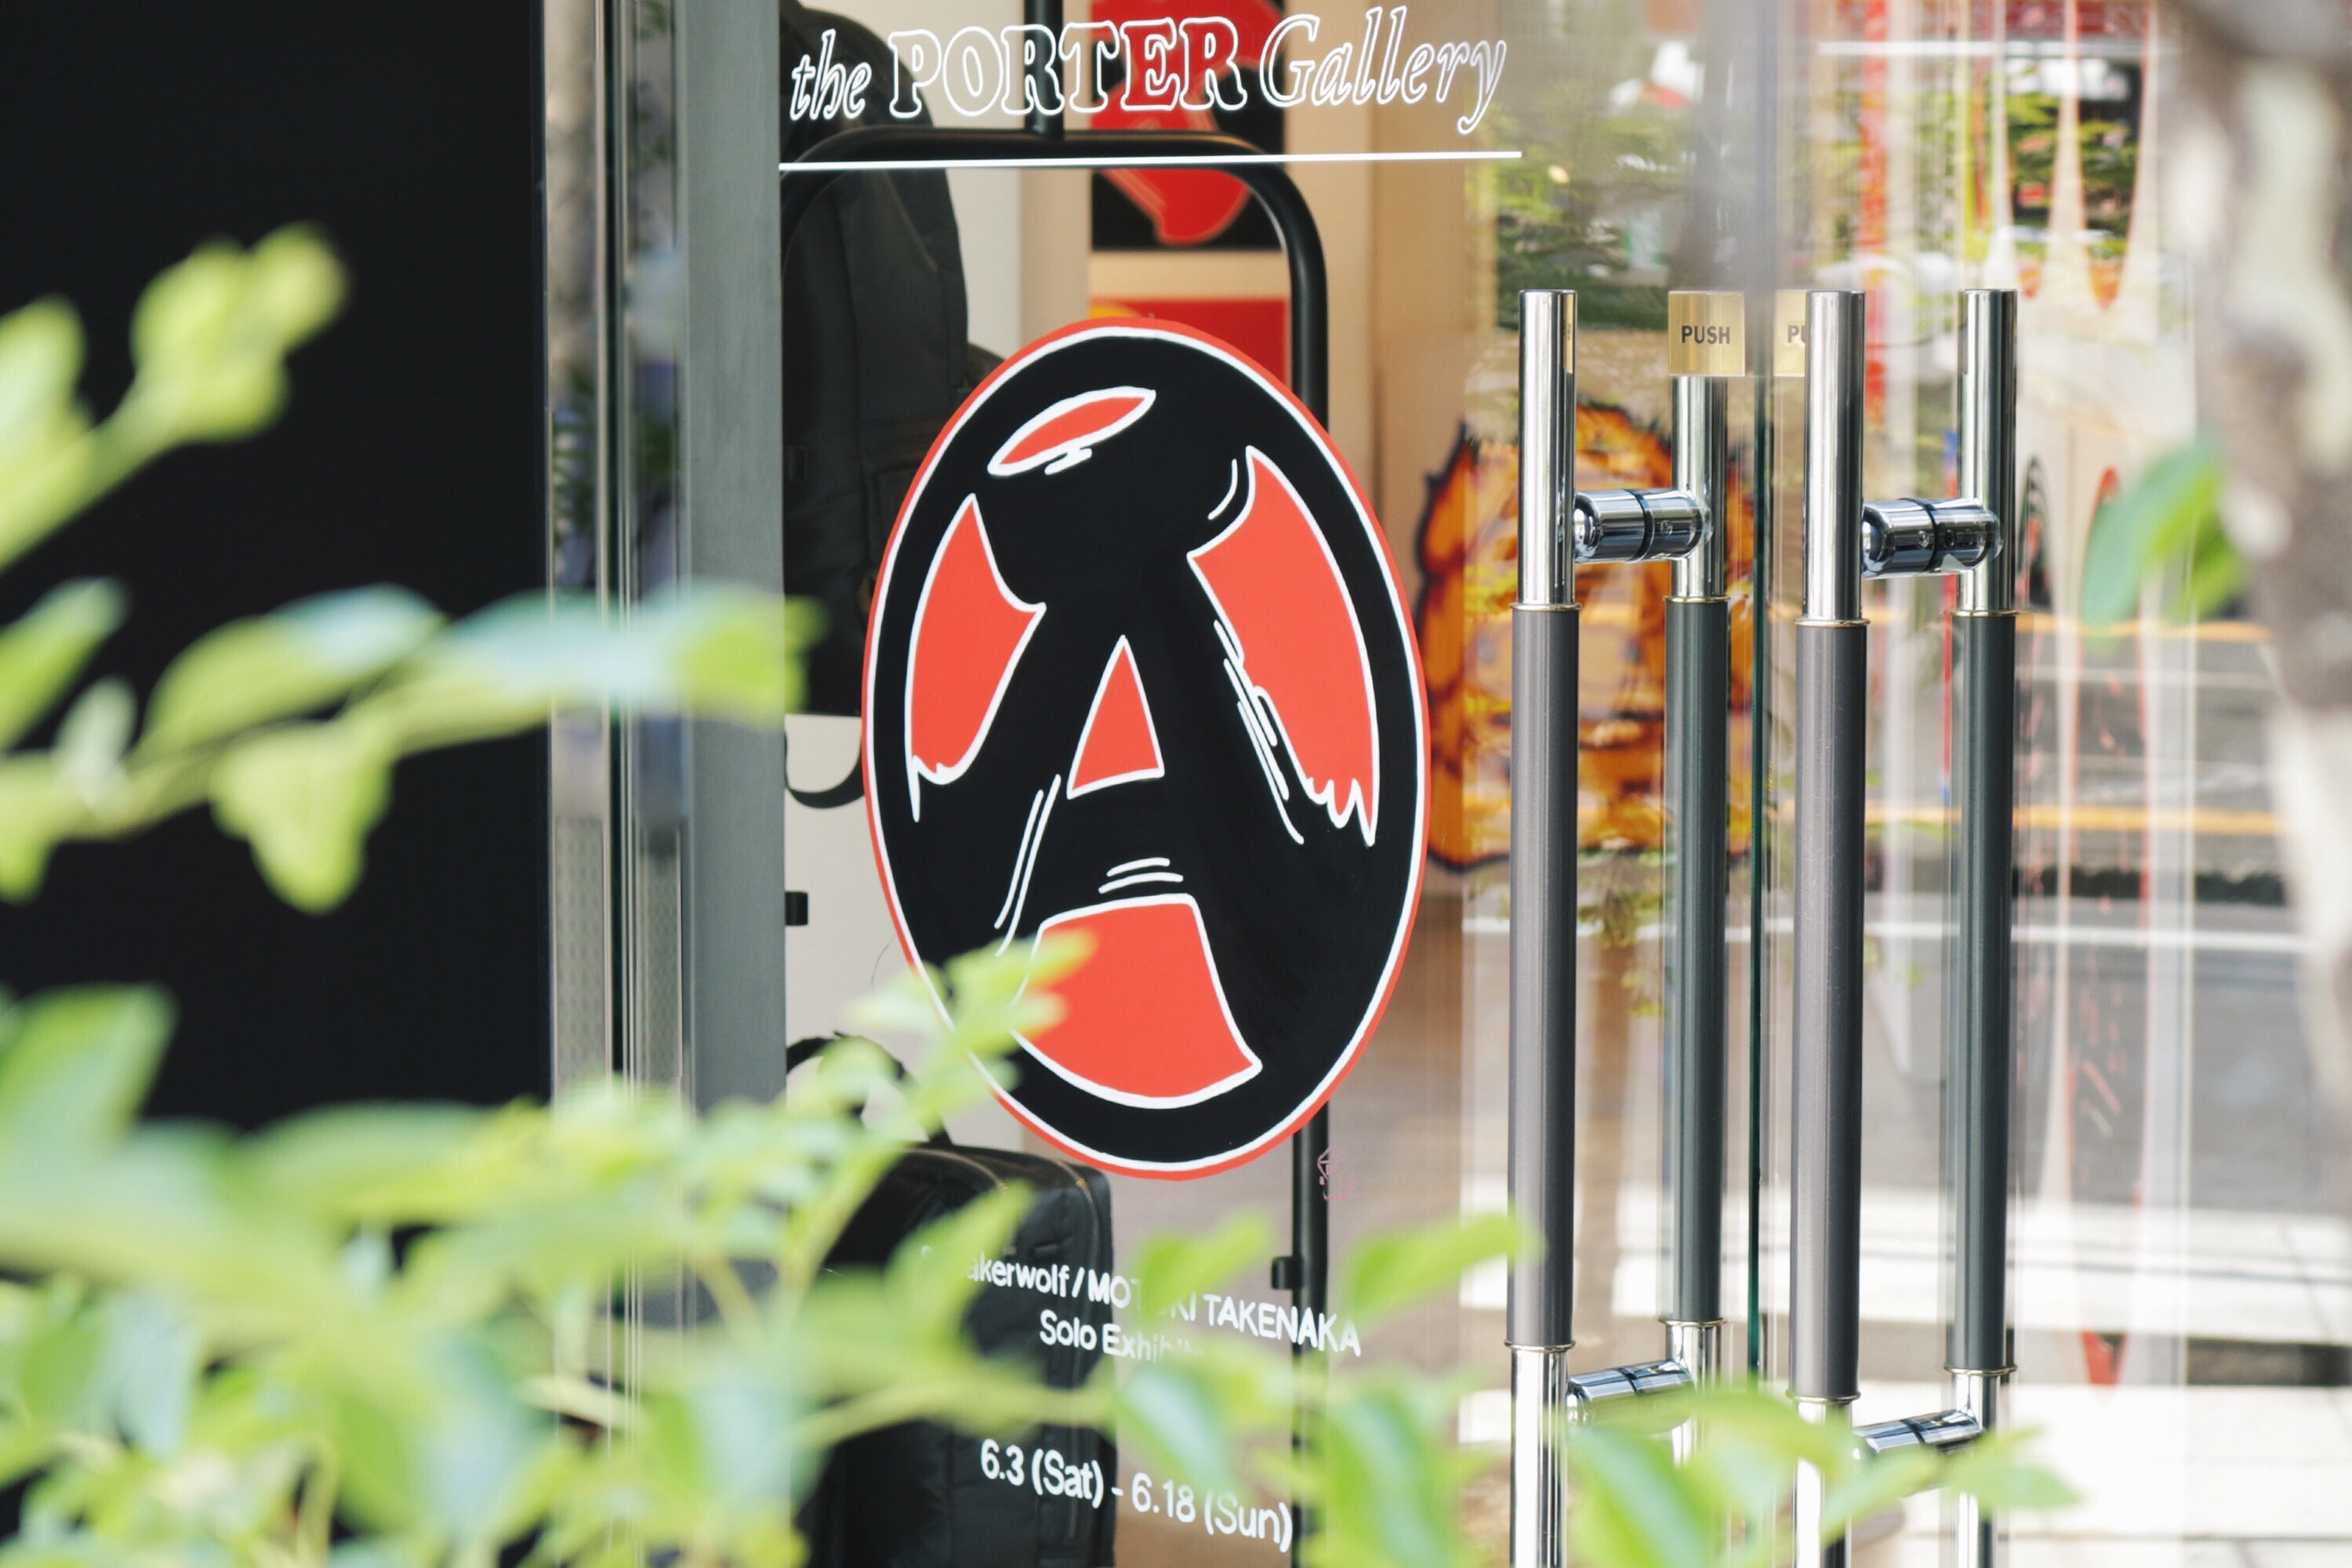 ストリートの重鎮たちも注目する Sneakerwolf Kanji-Graphy ART Exhibition “A” の内側を公開